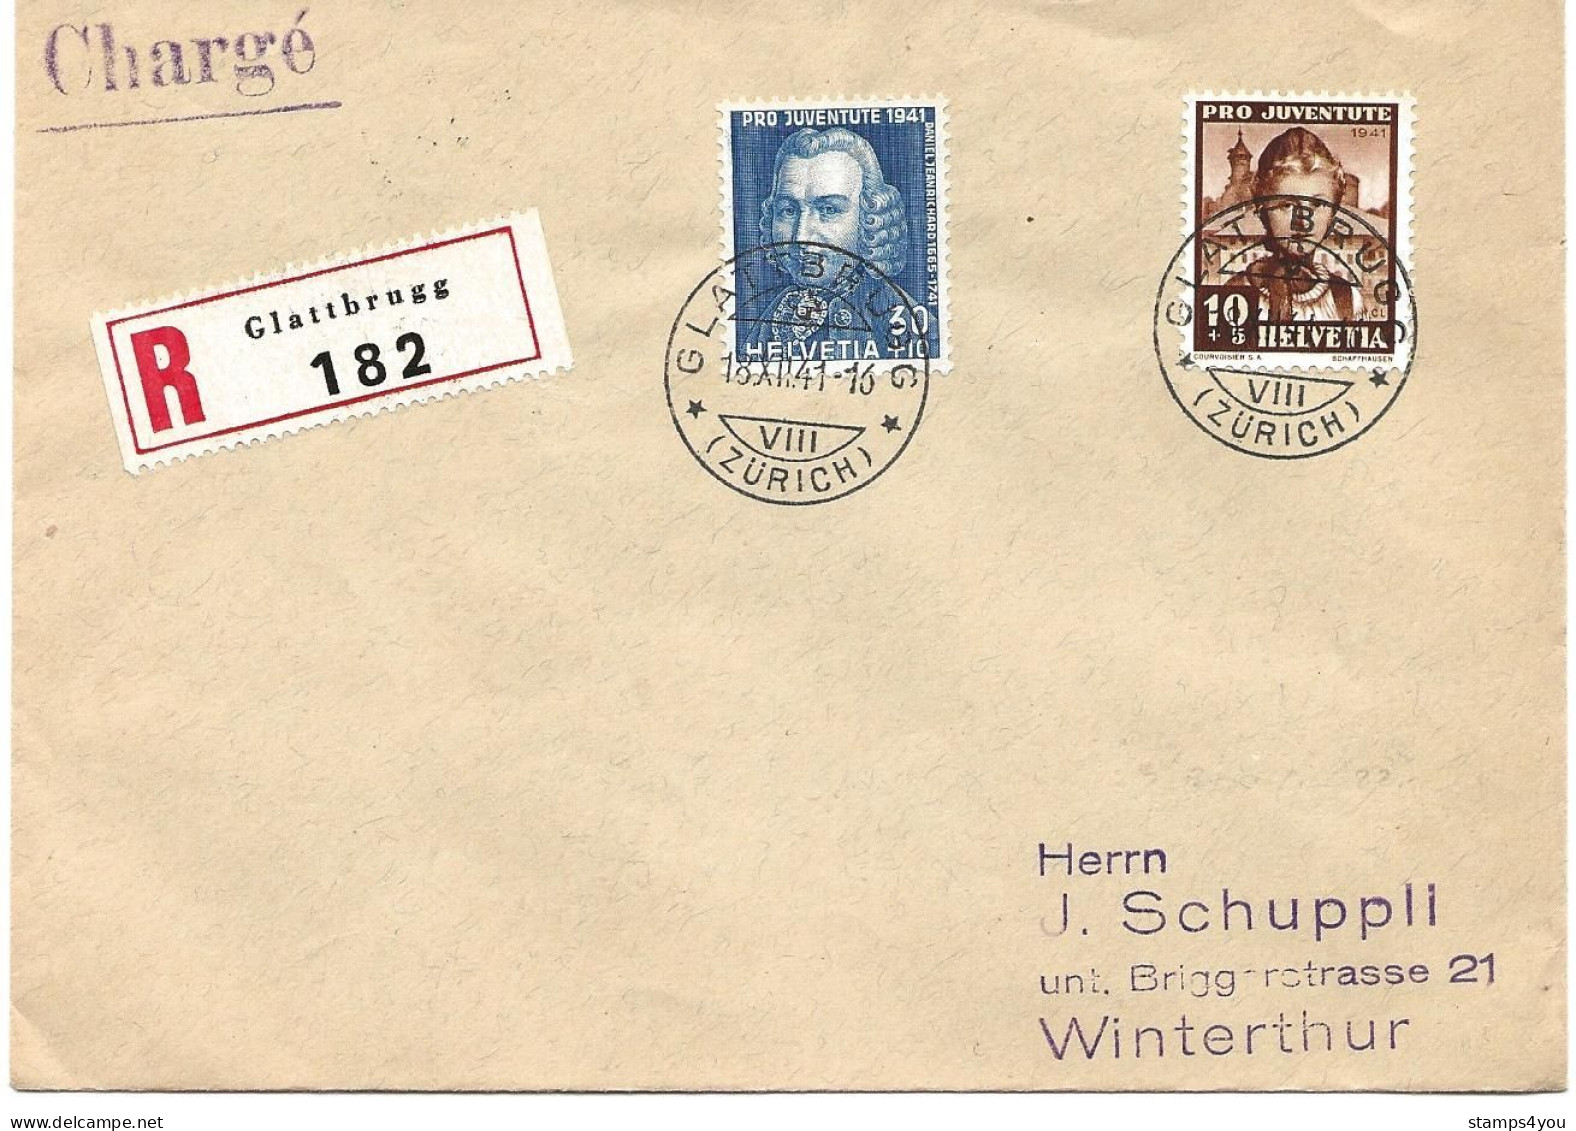 100 - 11 - Enveloppe Recommandée Envoyée De Glattbrugg 1941 - Timbres Pro Juventute - Briefe U. Dokumente